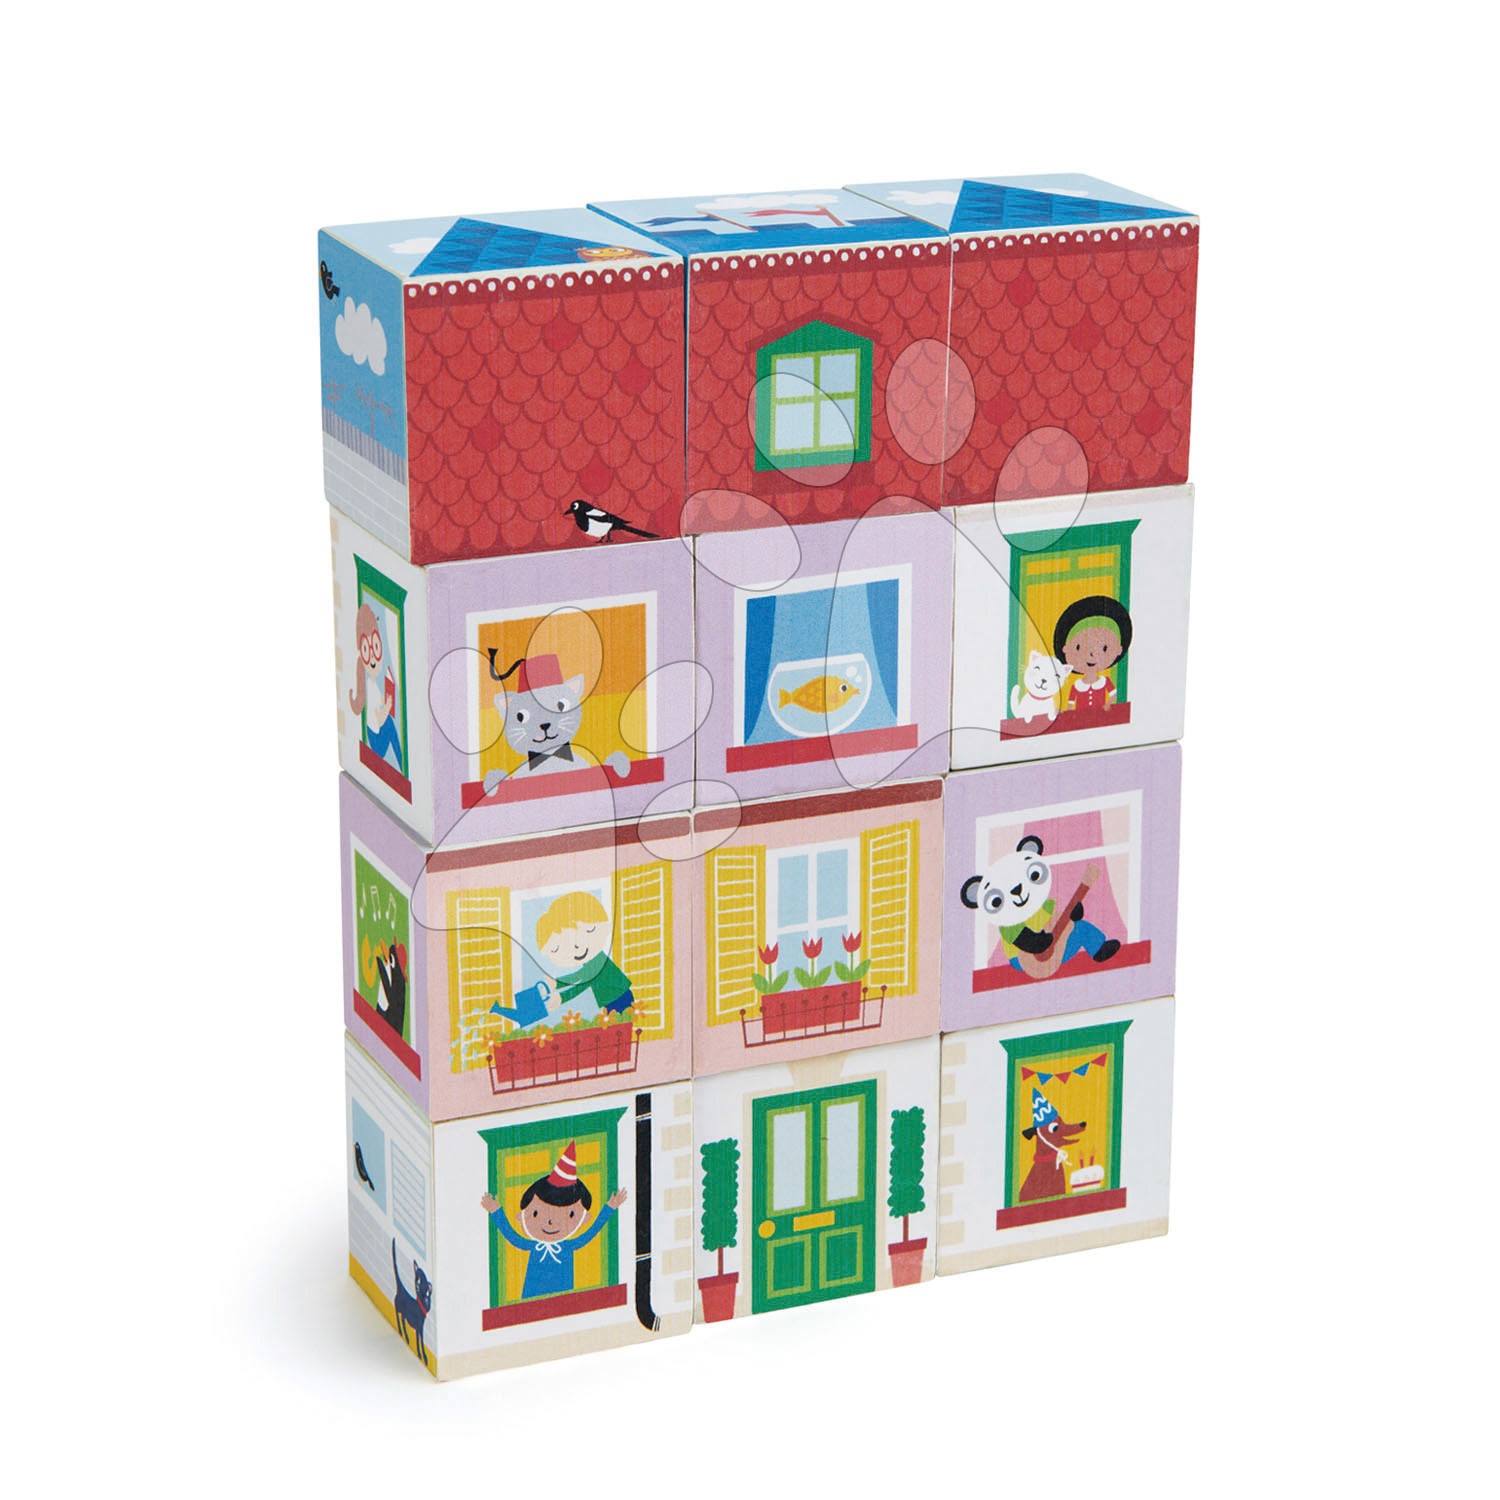 Drevené kocky - Drevené kocky život v dome Dream house Blocks Tender Leaf Toys s detailne maľovanými obrázkami 12 dielov od 18 mes